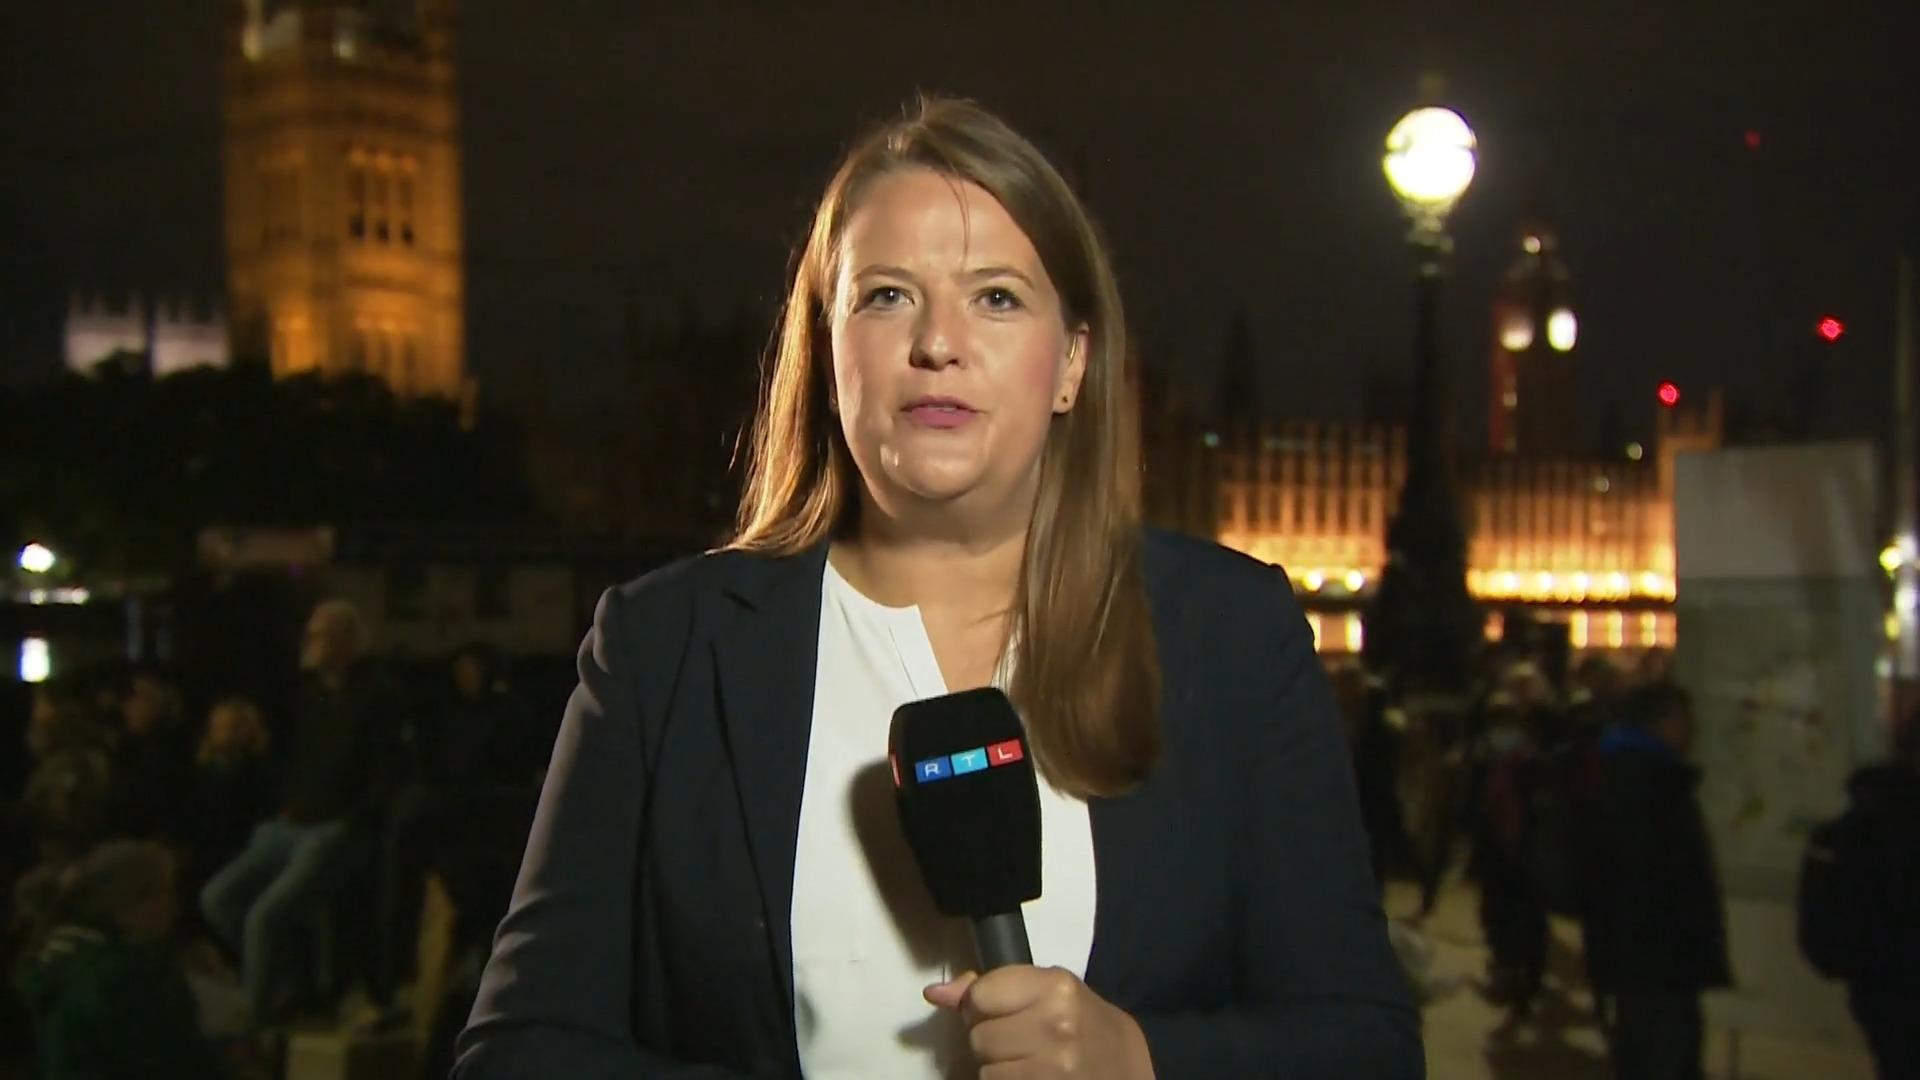 RTL-Reporterin: "Die Wartezeit ist den Menschen egal" Die Schlange in London wird länger